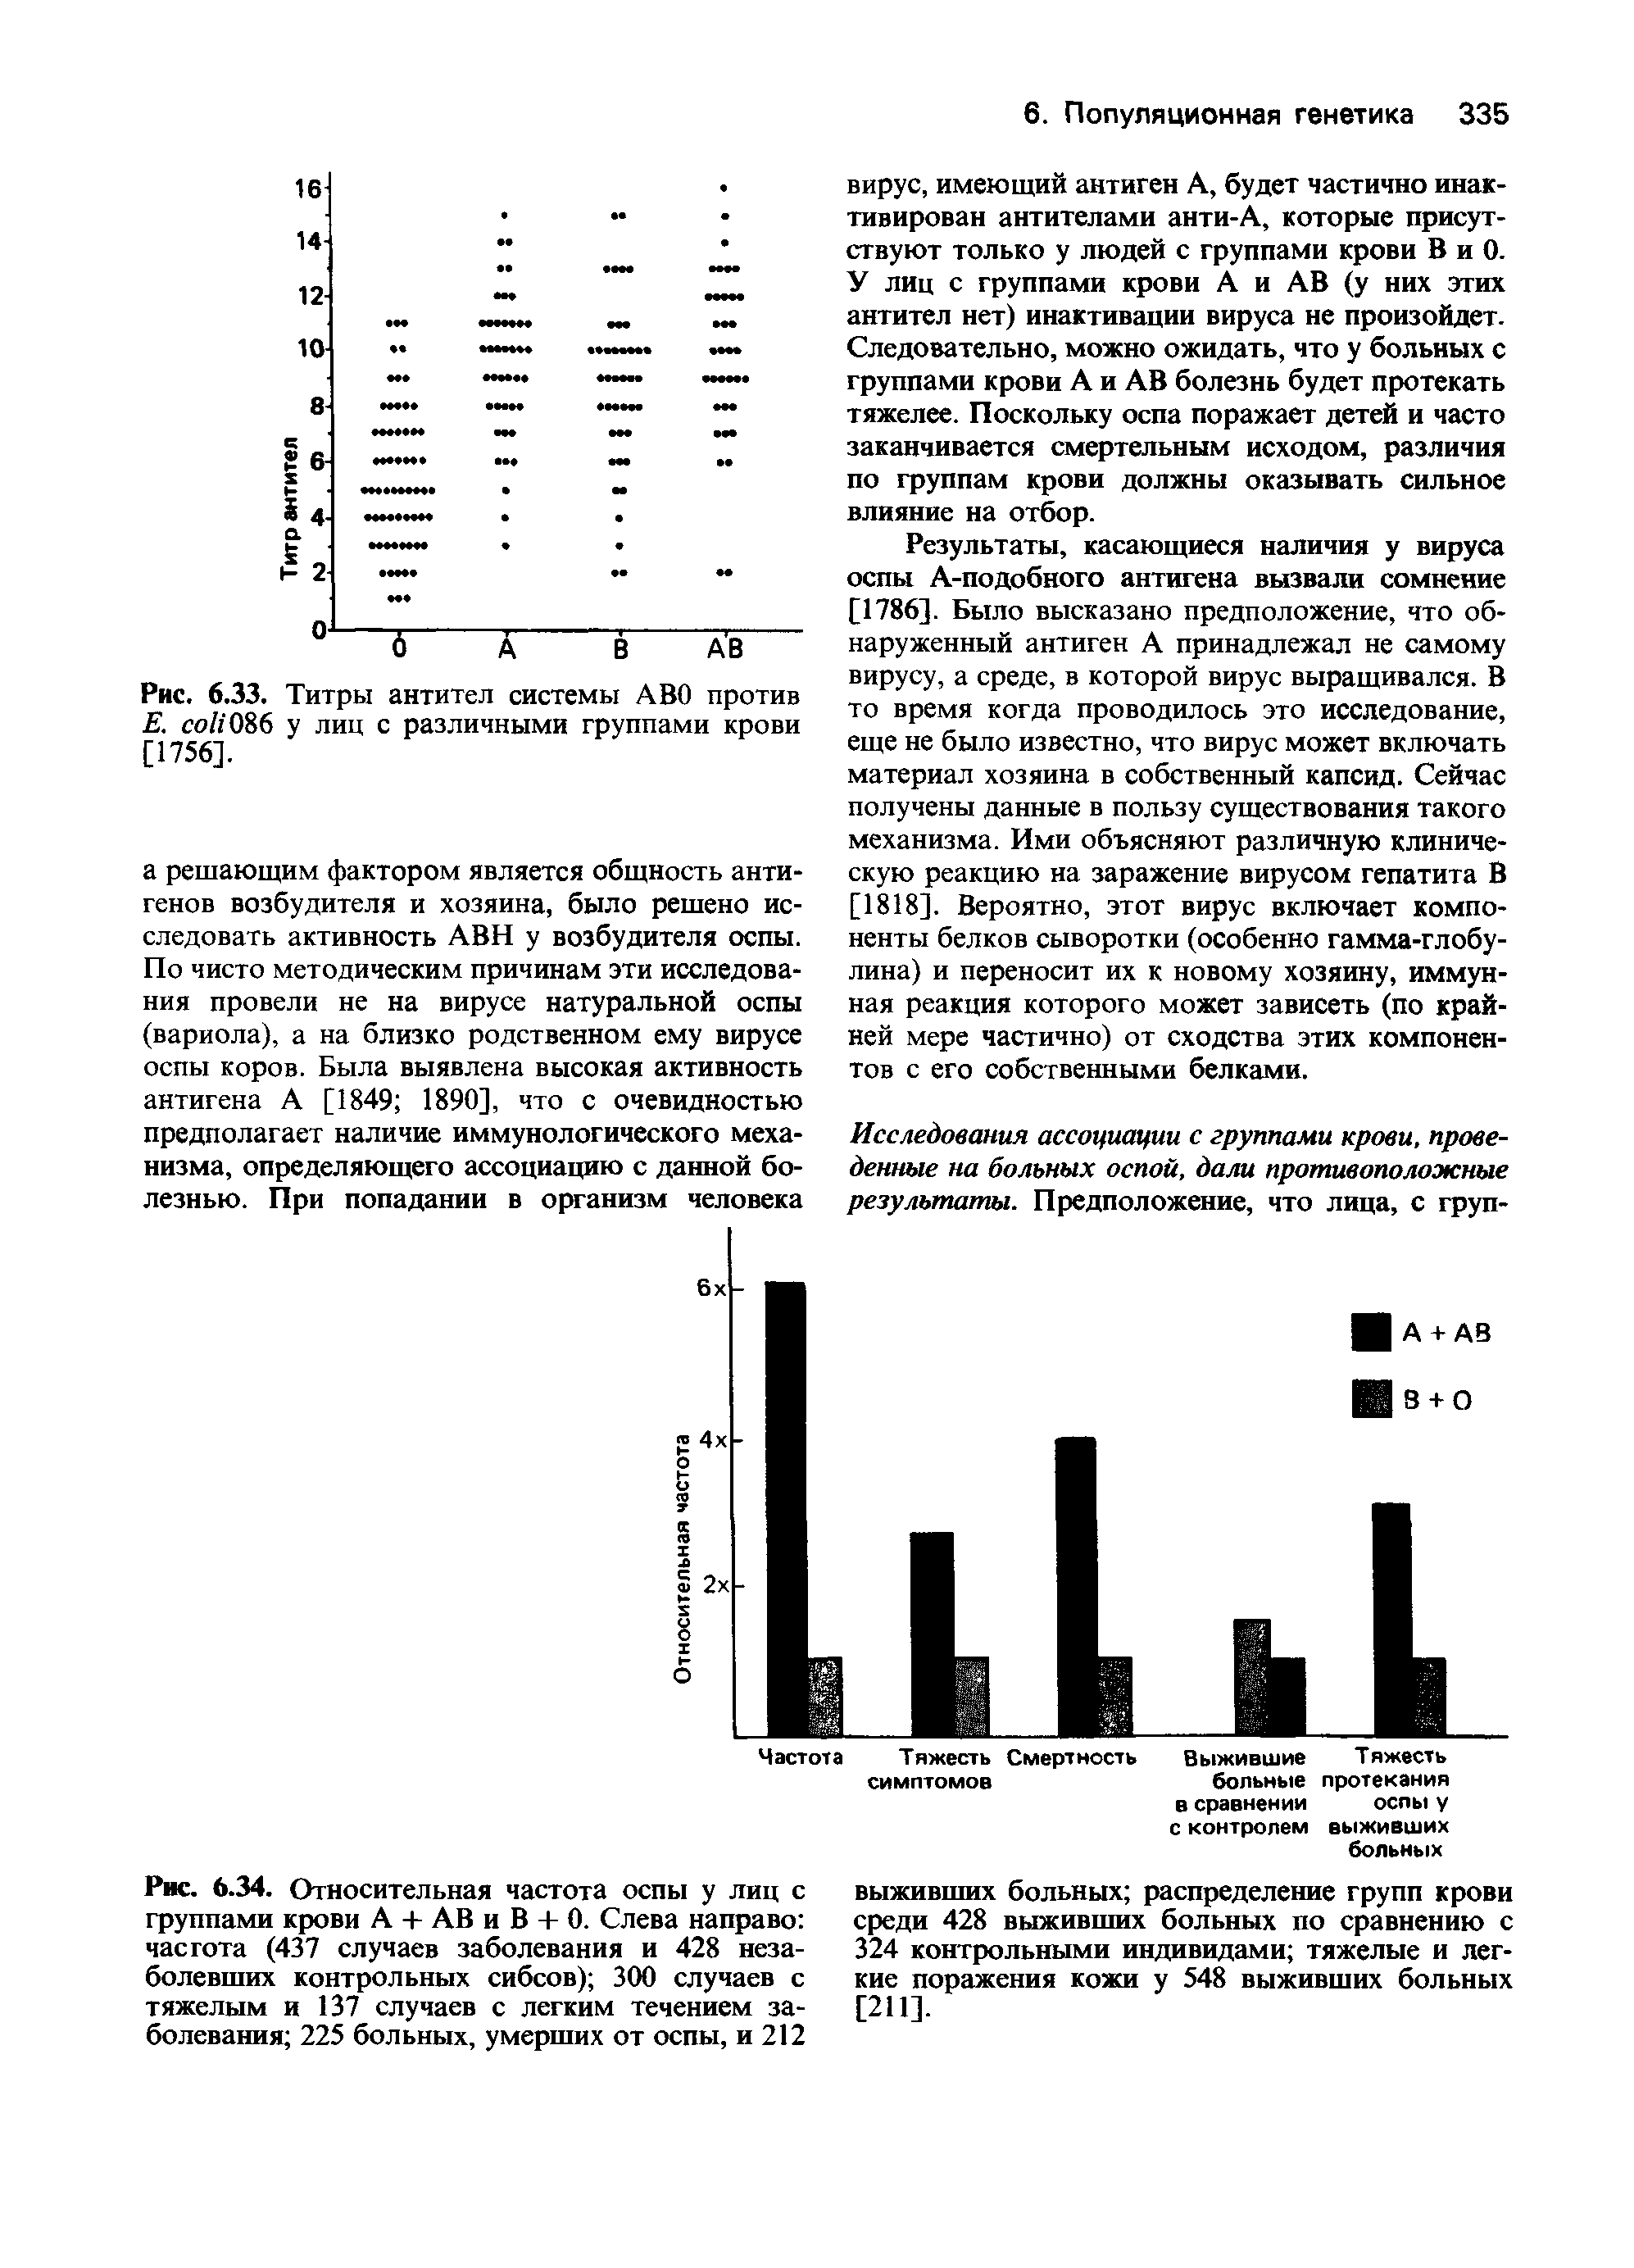 Рис. 6.33. Титры антител системы ABO против Е. 086 у лиц с различными группами крови [1756].